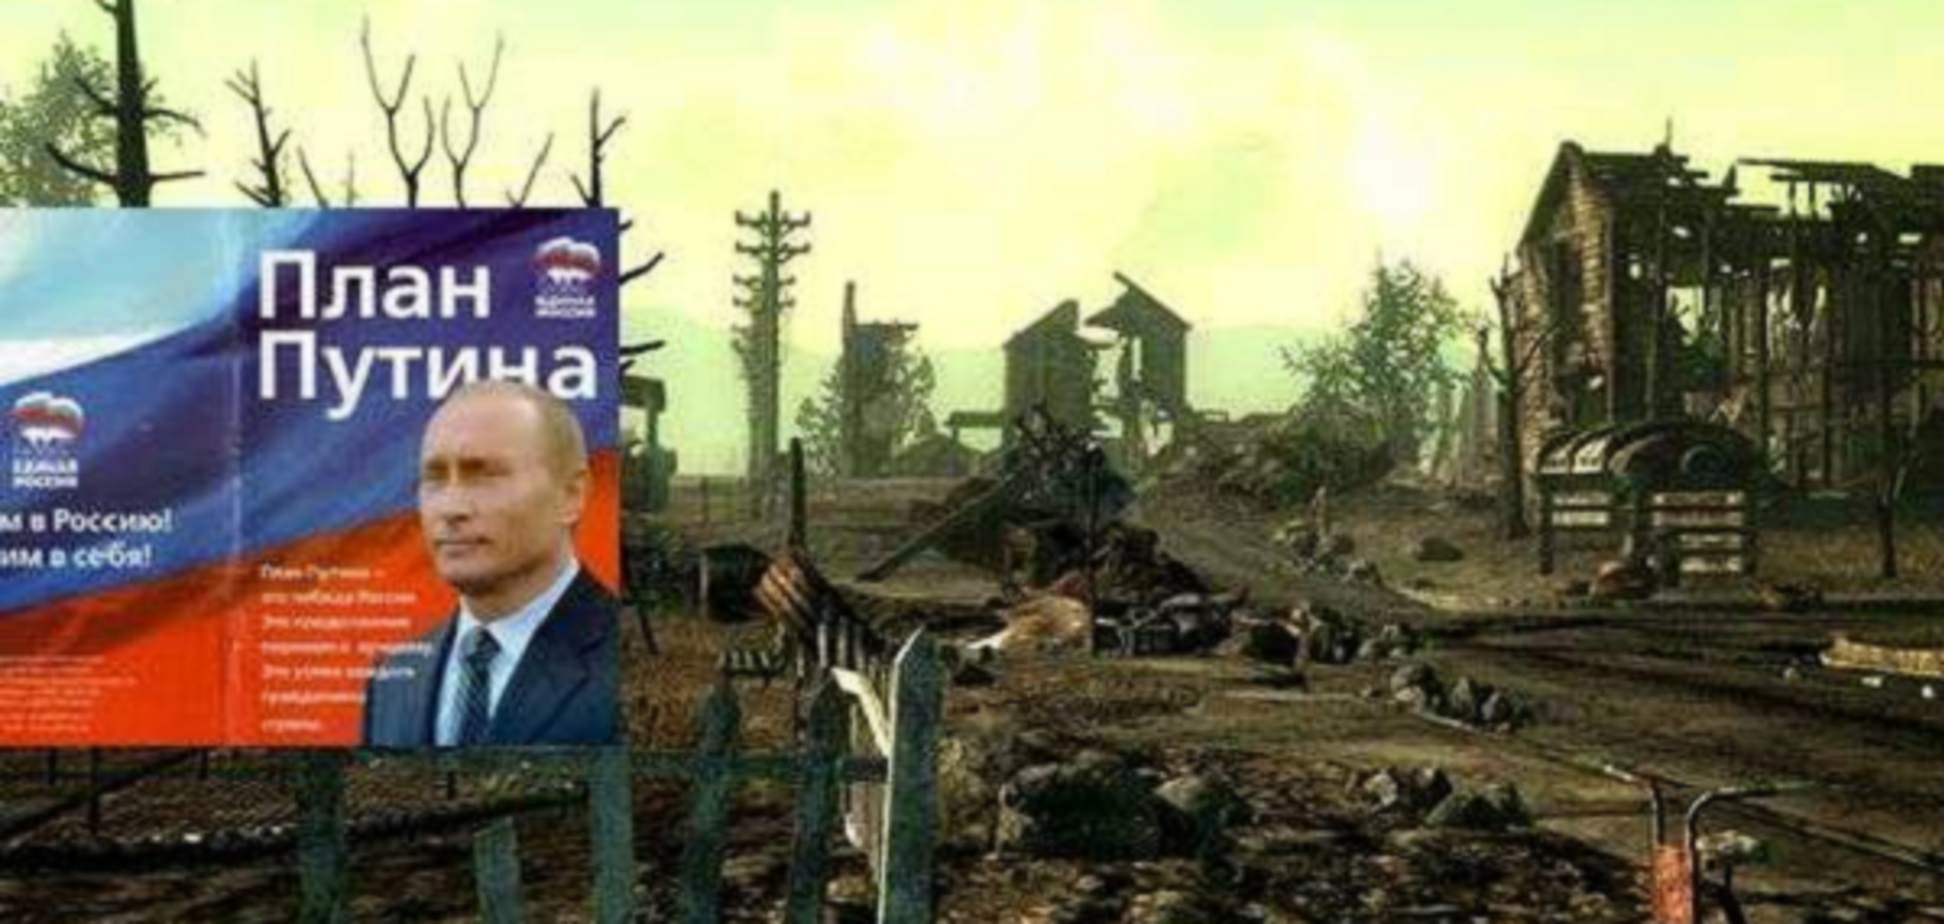 Путин запустил маховик войны против Запада и его ''прислужницы'' Украины — американский политолог